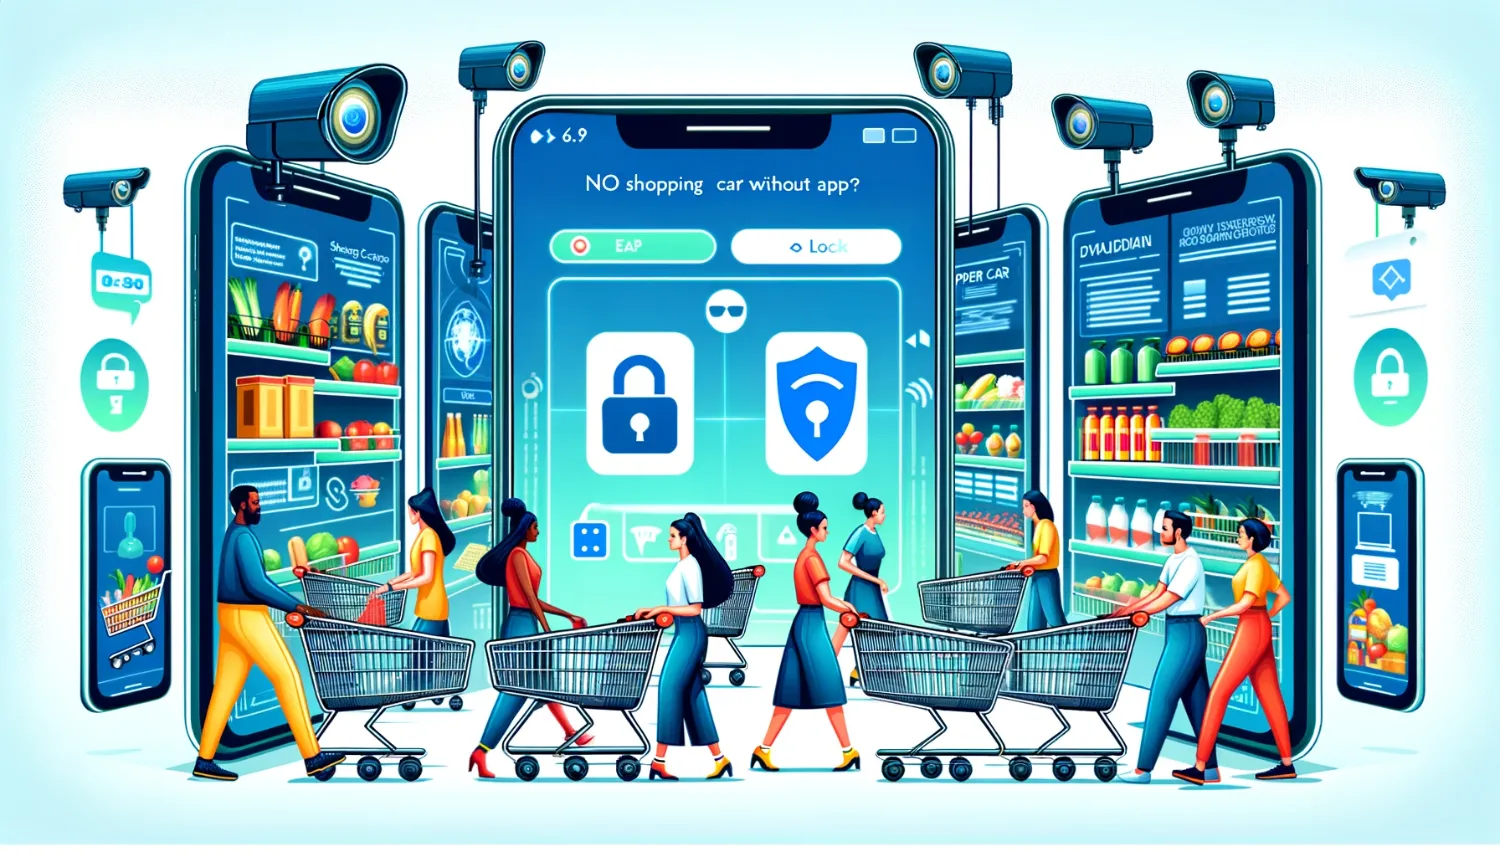 Shopping carts, monitoring via app